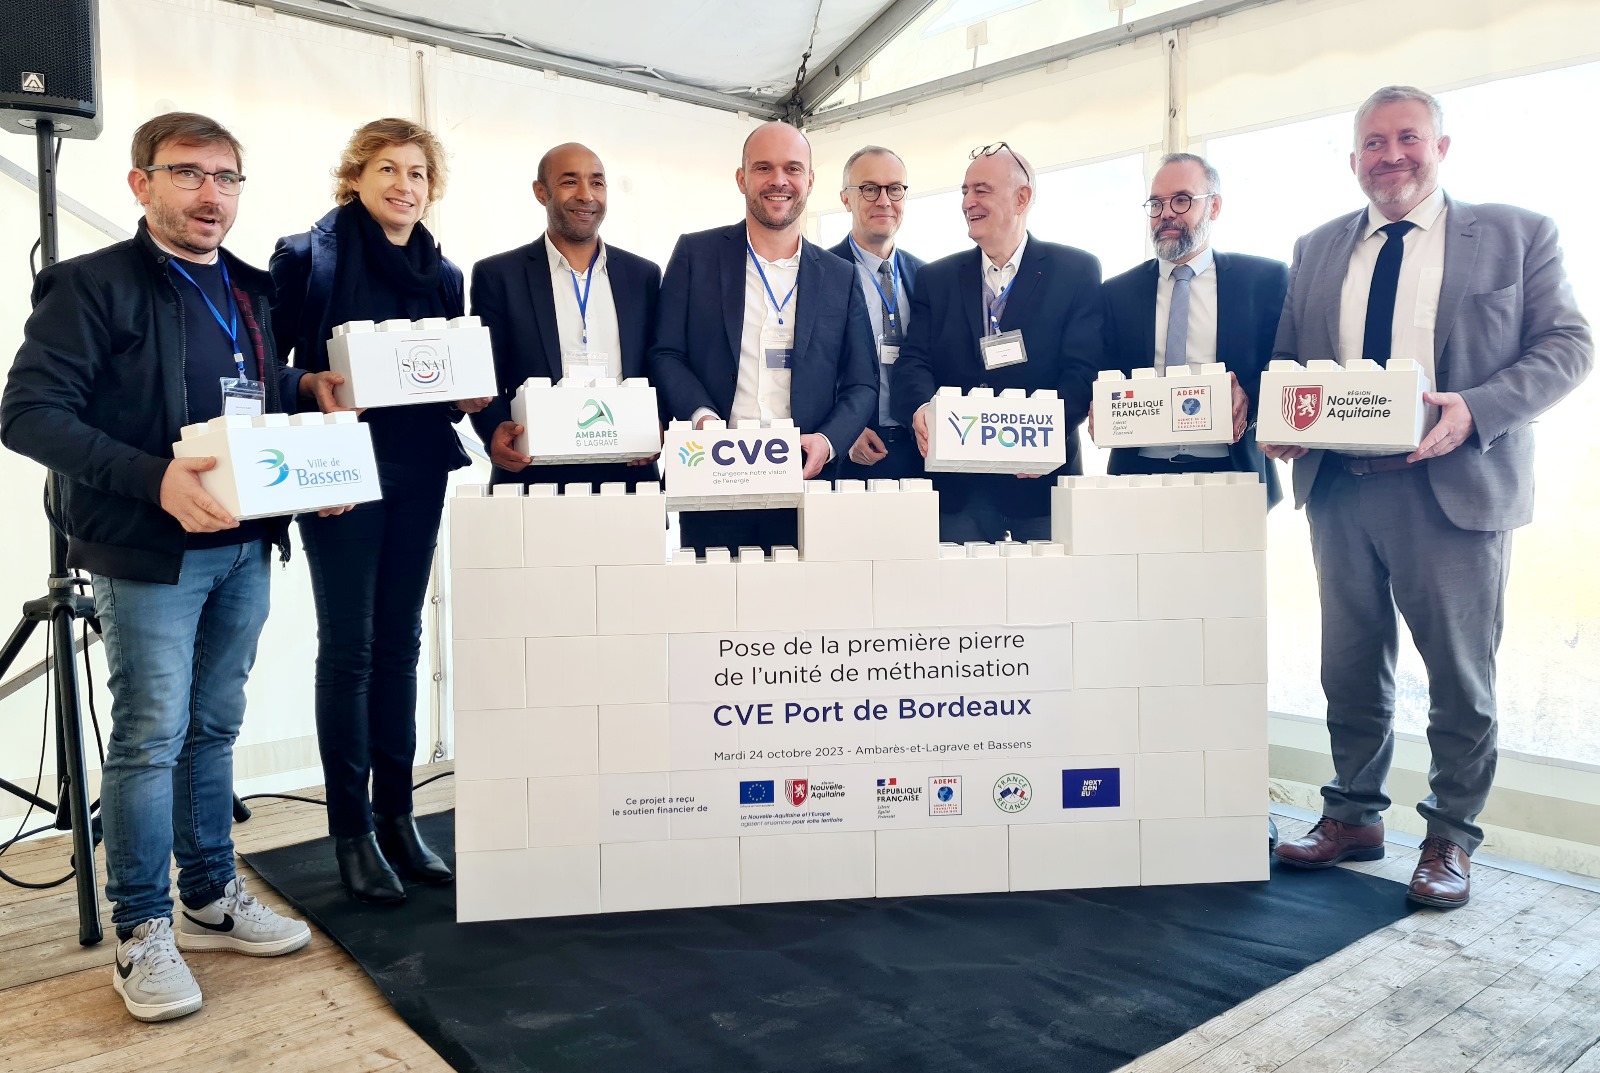 Port de Bordeaux : Pose de la Première pierre de l’unité de méthanisation CVE Port de Bordeaux